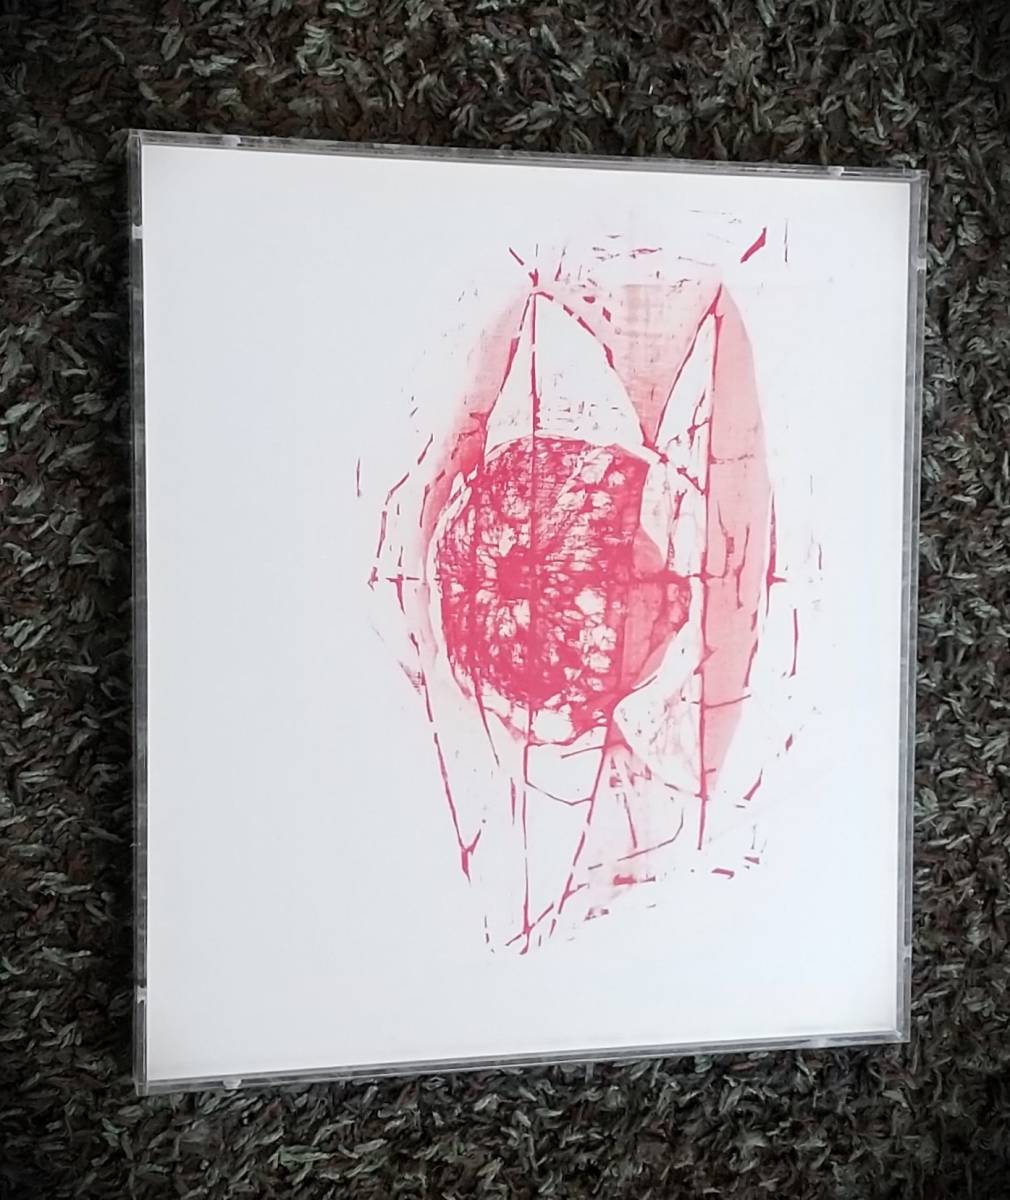 Seiichiro Miida 红色混合媒体图像, 2007年生产, 亲笔签名, 独一无二的亚克力框【正品保证】Moriichiro Miida, 绘画, 水彩, 抽象绘画